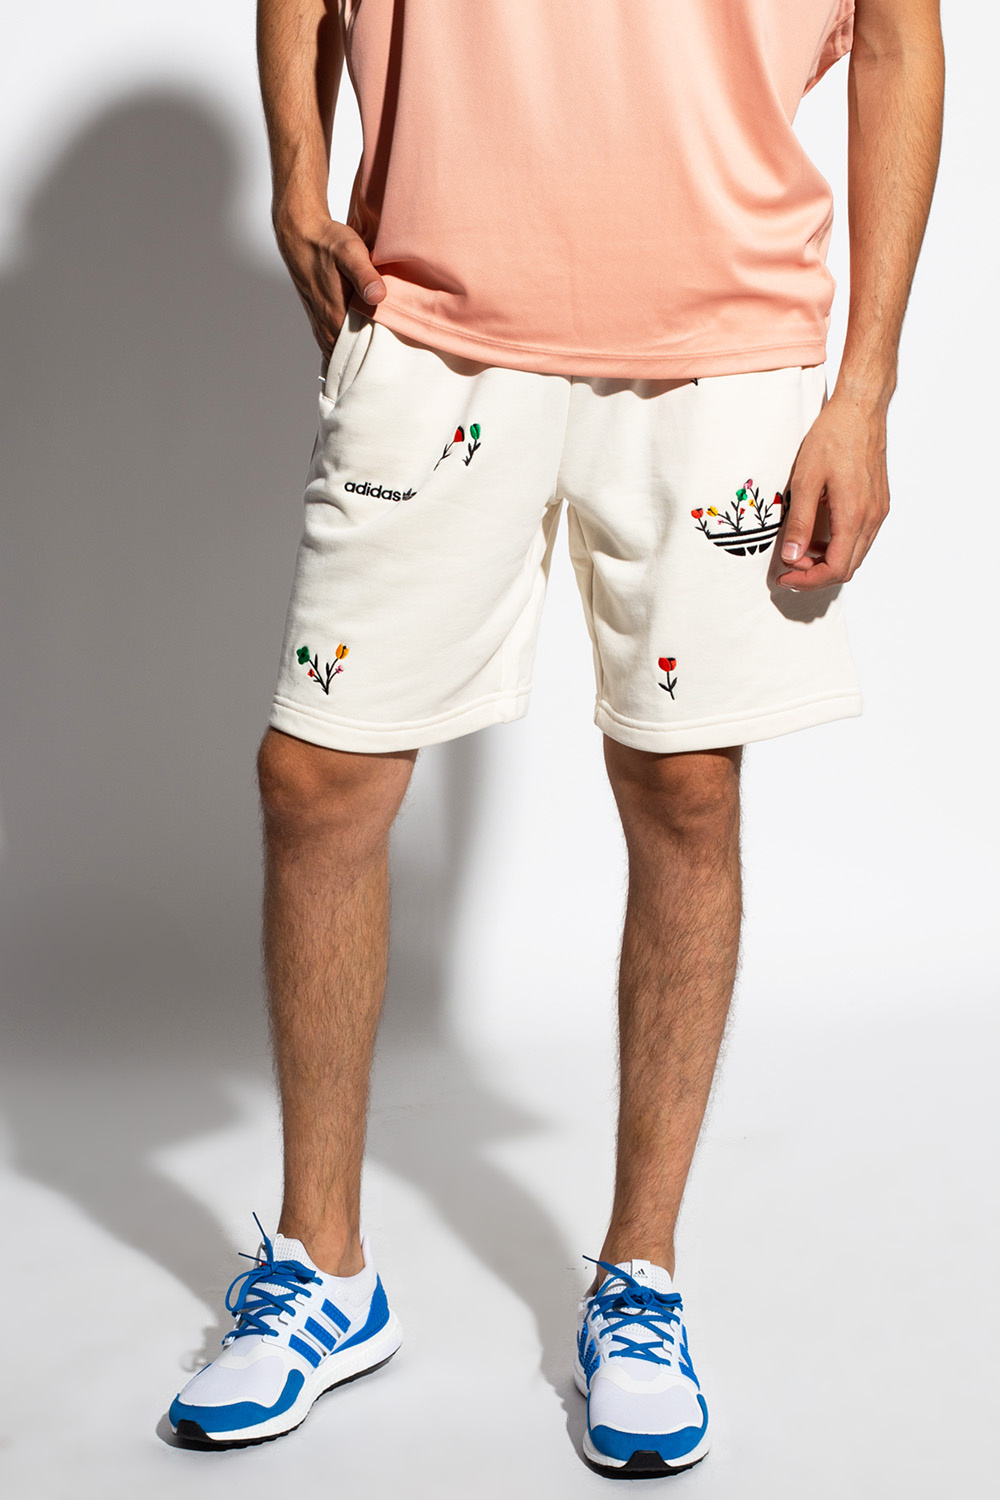 Originals Shorts | contact adidas online store canada official site | IetpShops | Men's